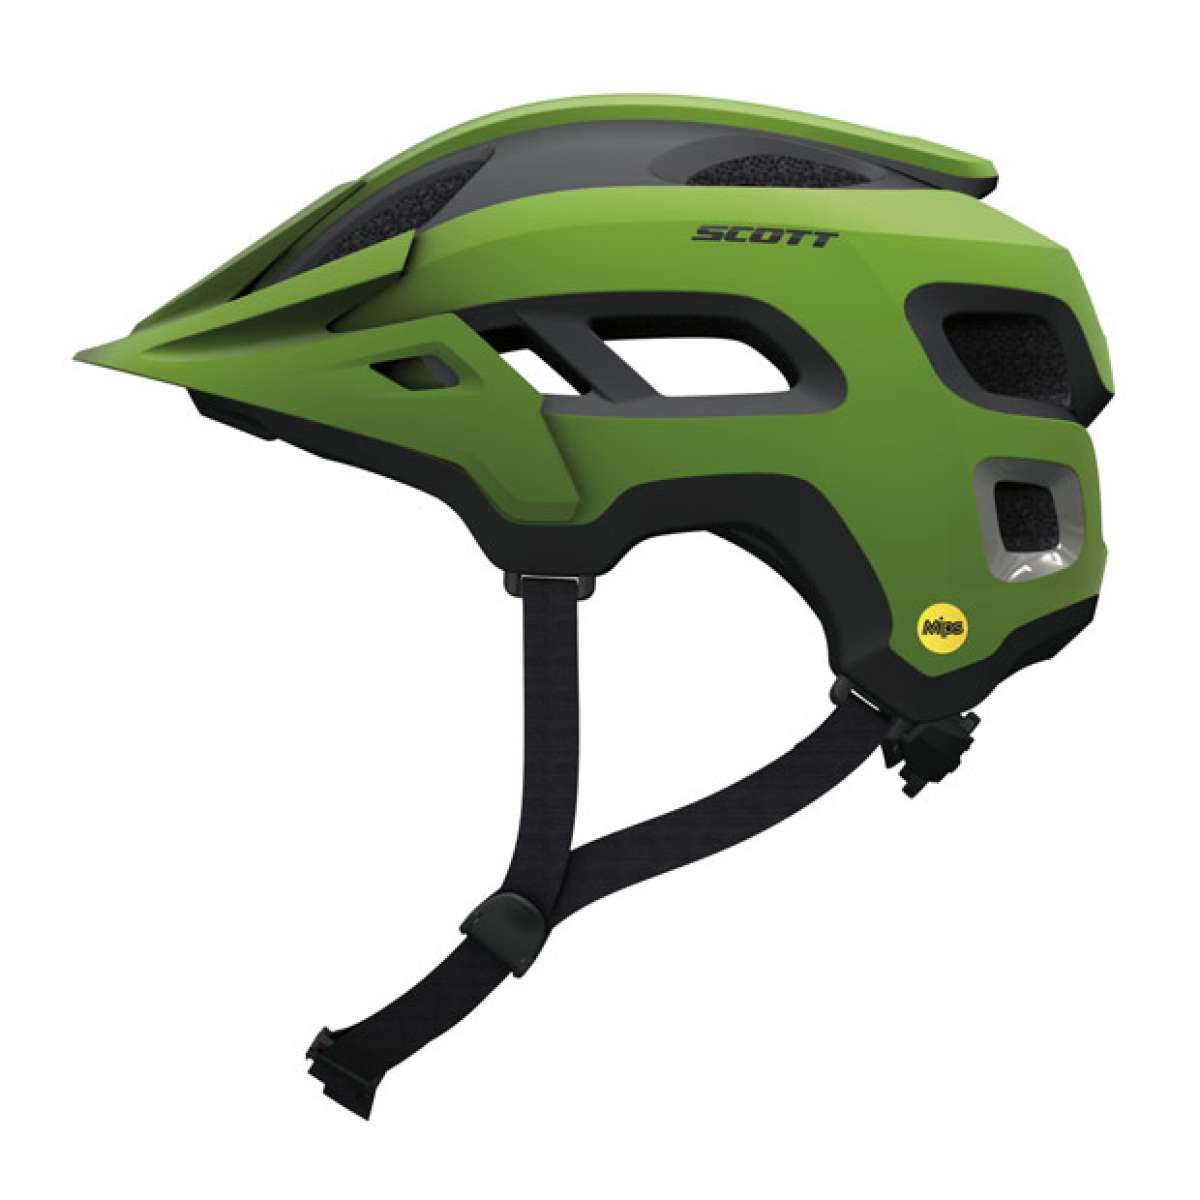 Nuevo casco Scott Stego con tecnología MIPS para amantes del Enduro